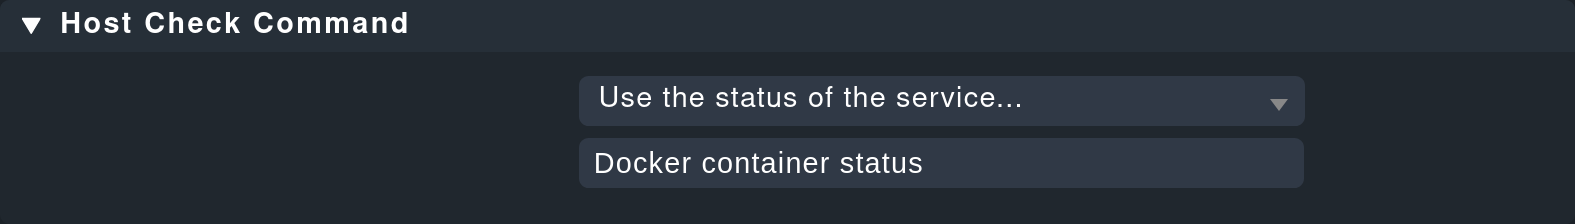 Regel für das Kommando zur Überprüfung des Host-Status der Container.